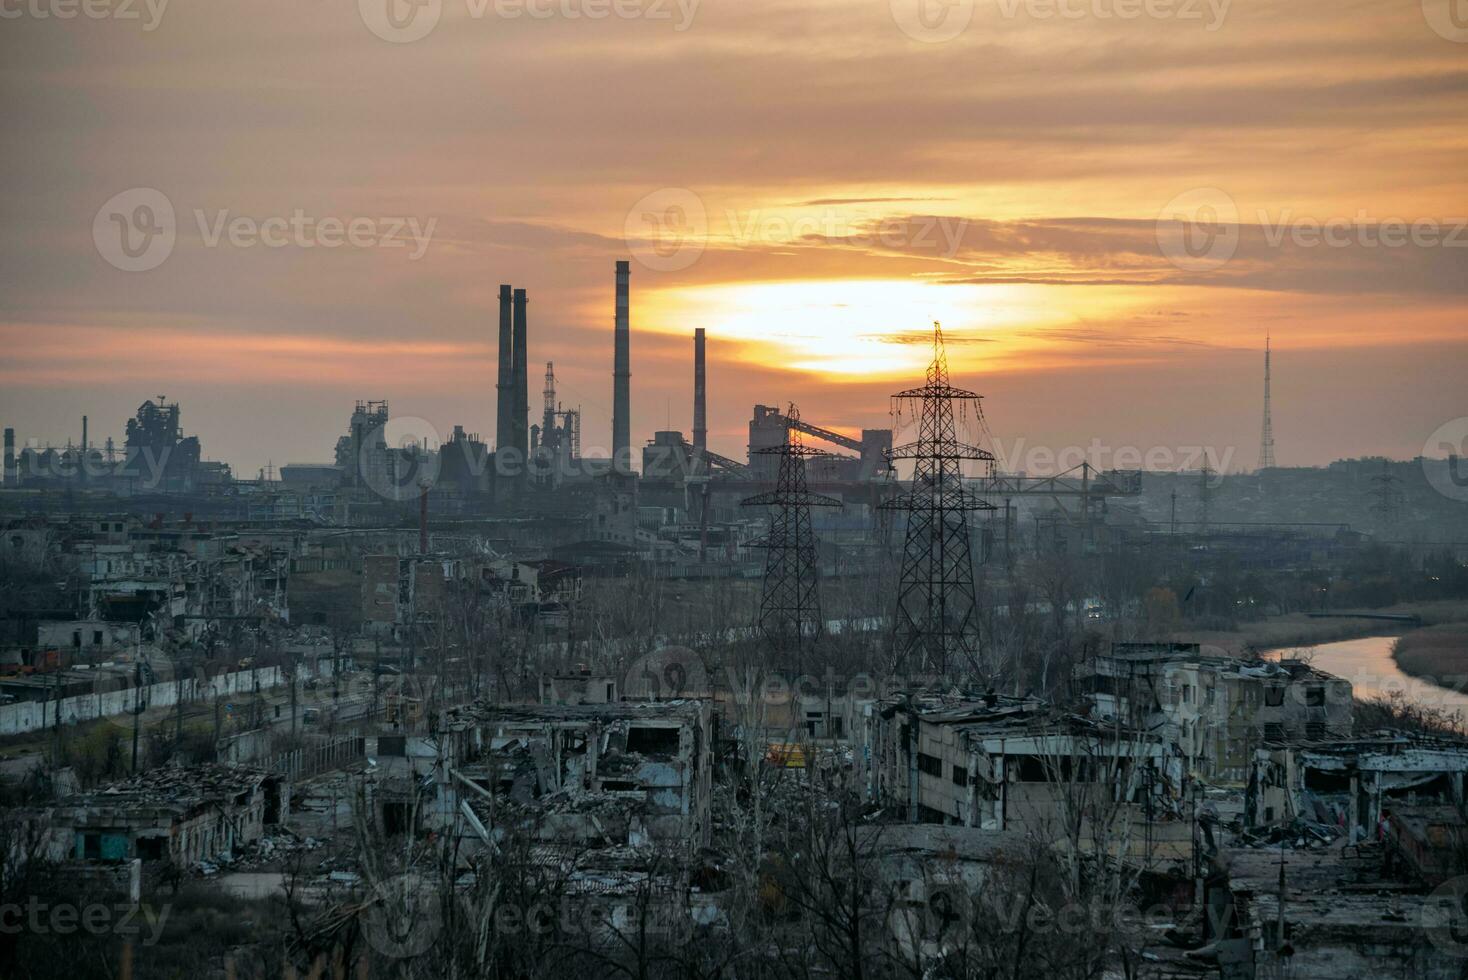 förstörd byggnader av de verkstad av de azovstal växt i mariupol ukraina foto